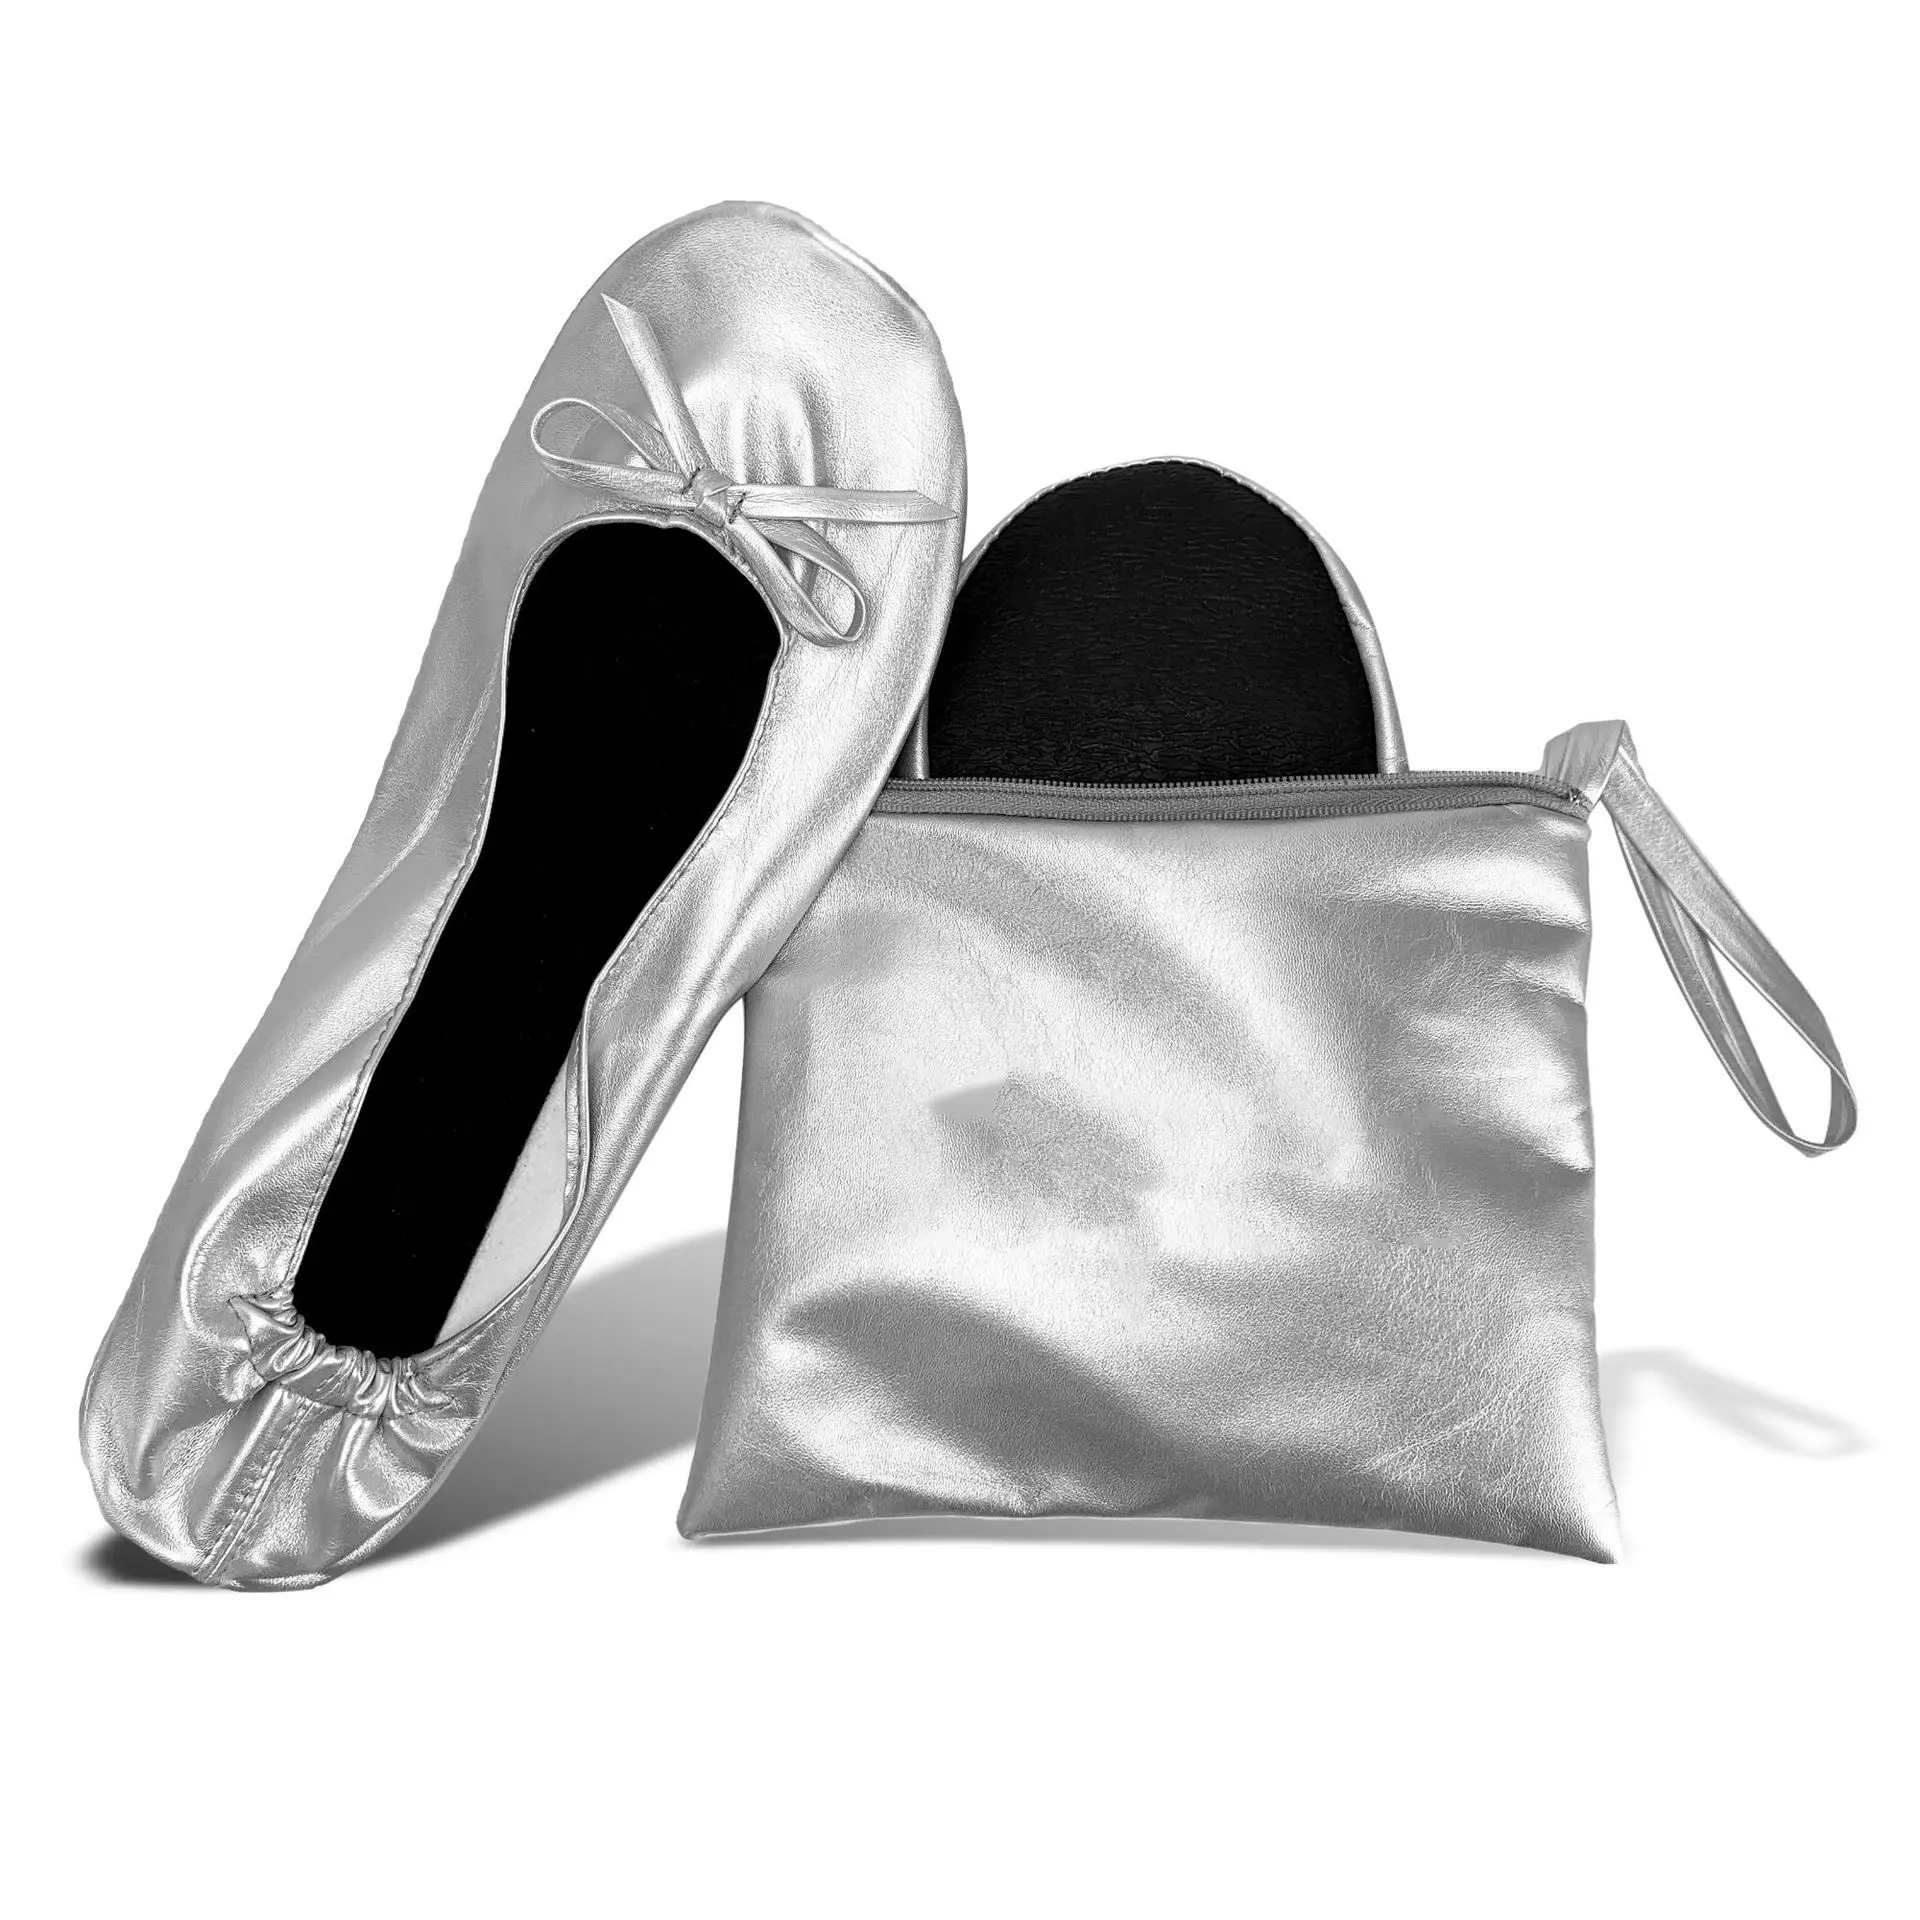 

Amazon Hot Sale Foldable Indoor Ballet Dance Shoes Party Shoes Flat Ballet Shoes Women, As photo show